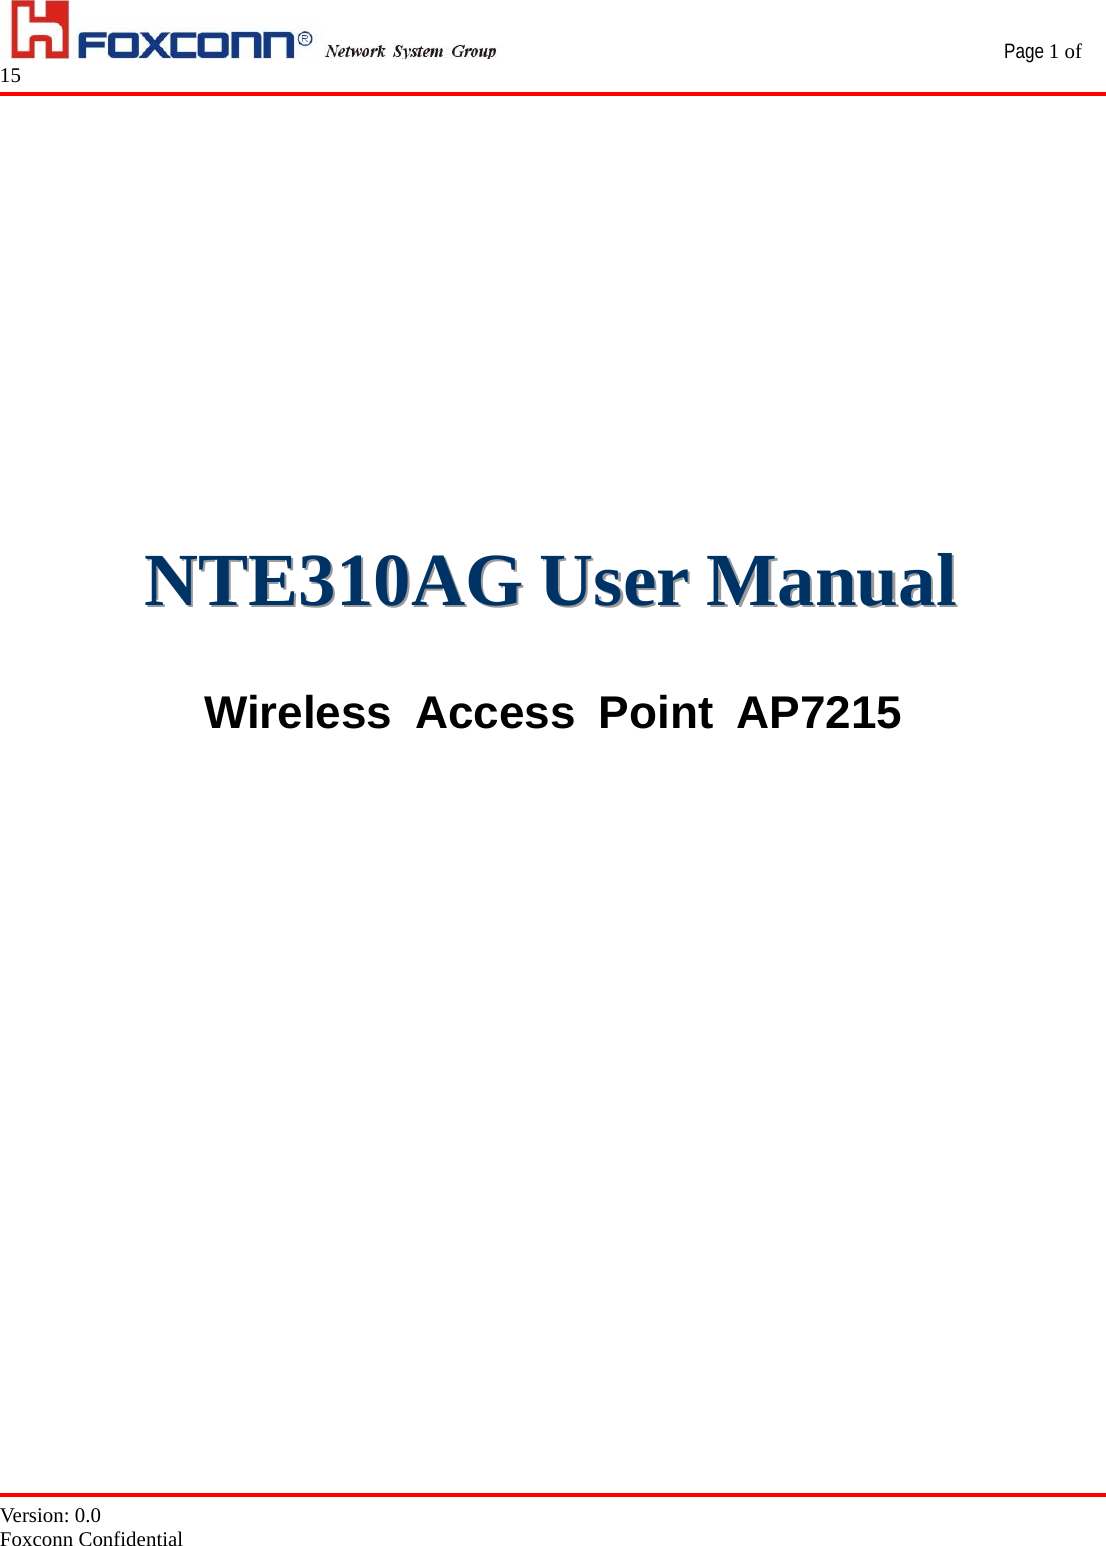                                                 Page 1 of 15   Version: 0.0 Foxconn Confidential                                  NNNTTTEEE333111000AAAGGG   UUUssseeerrr   MMMaaannnuuuaaalll    Wireless Access Point AP7215                   